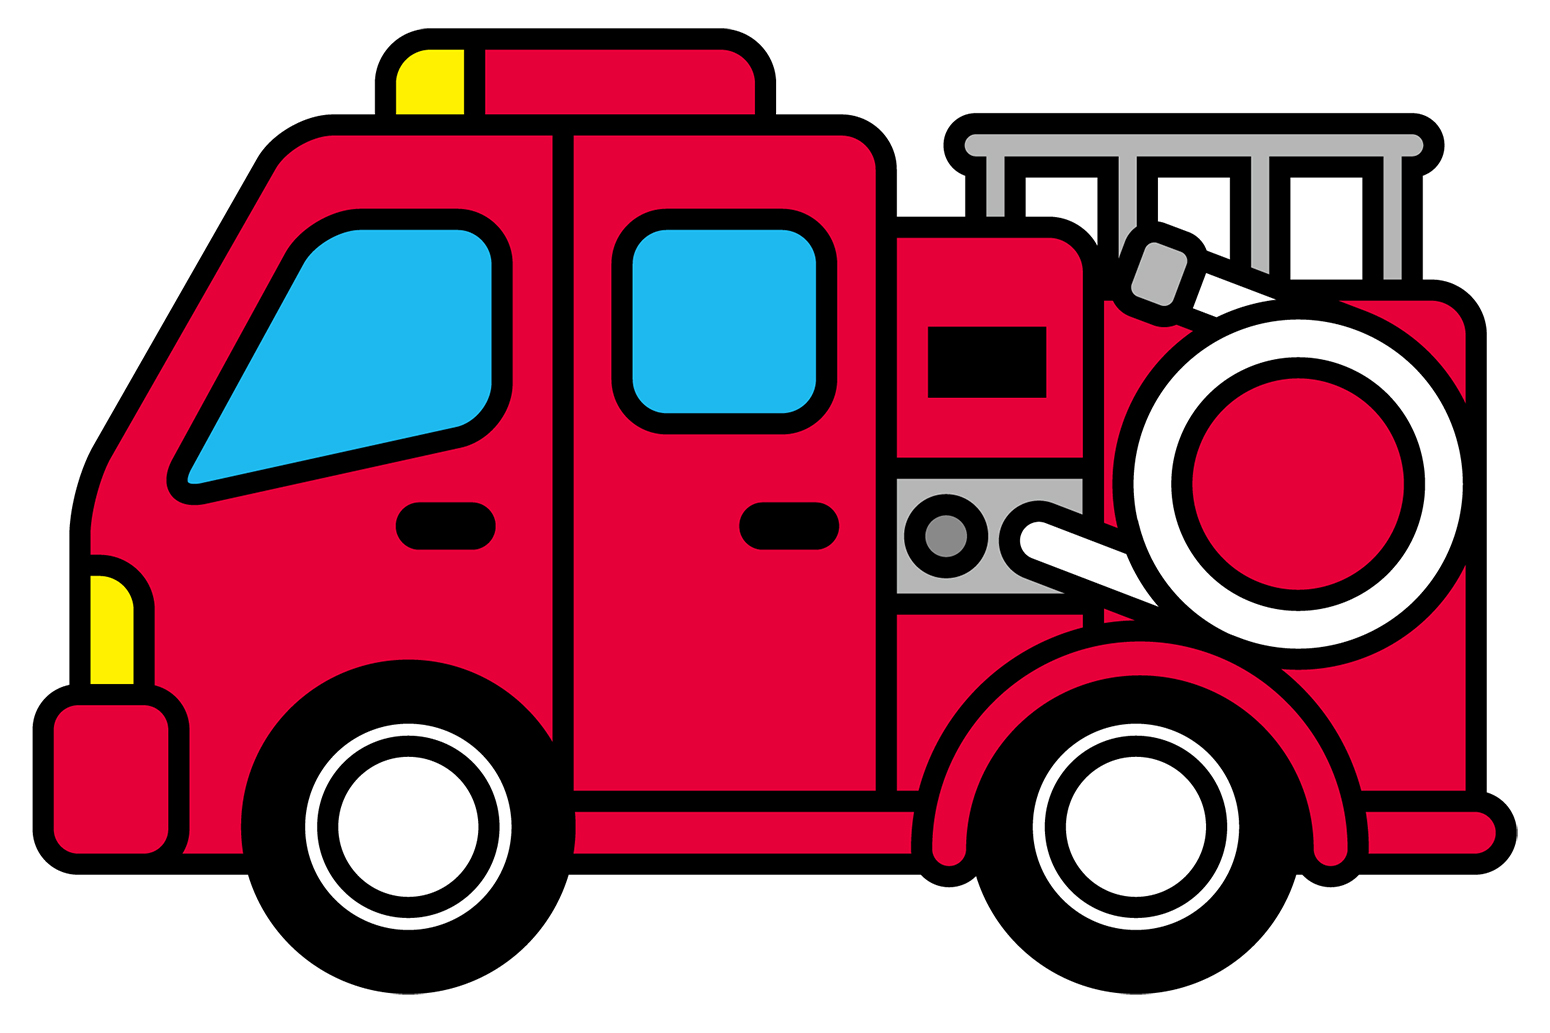 先着100名様に消防車ミニカープレゼントもあり！南草津駅前で親子一緒に防災を学ぶ『はさま公園防災ひろば』が楽しそう！